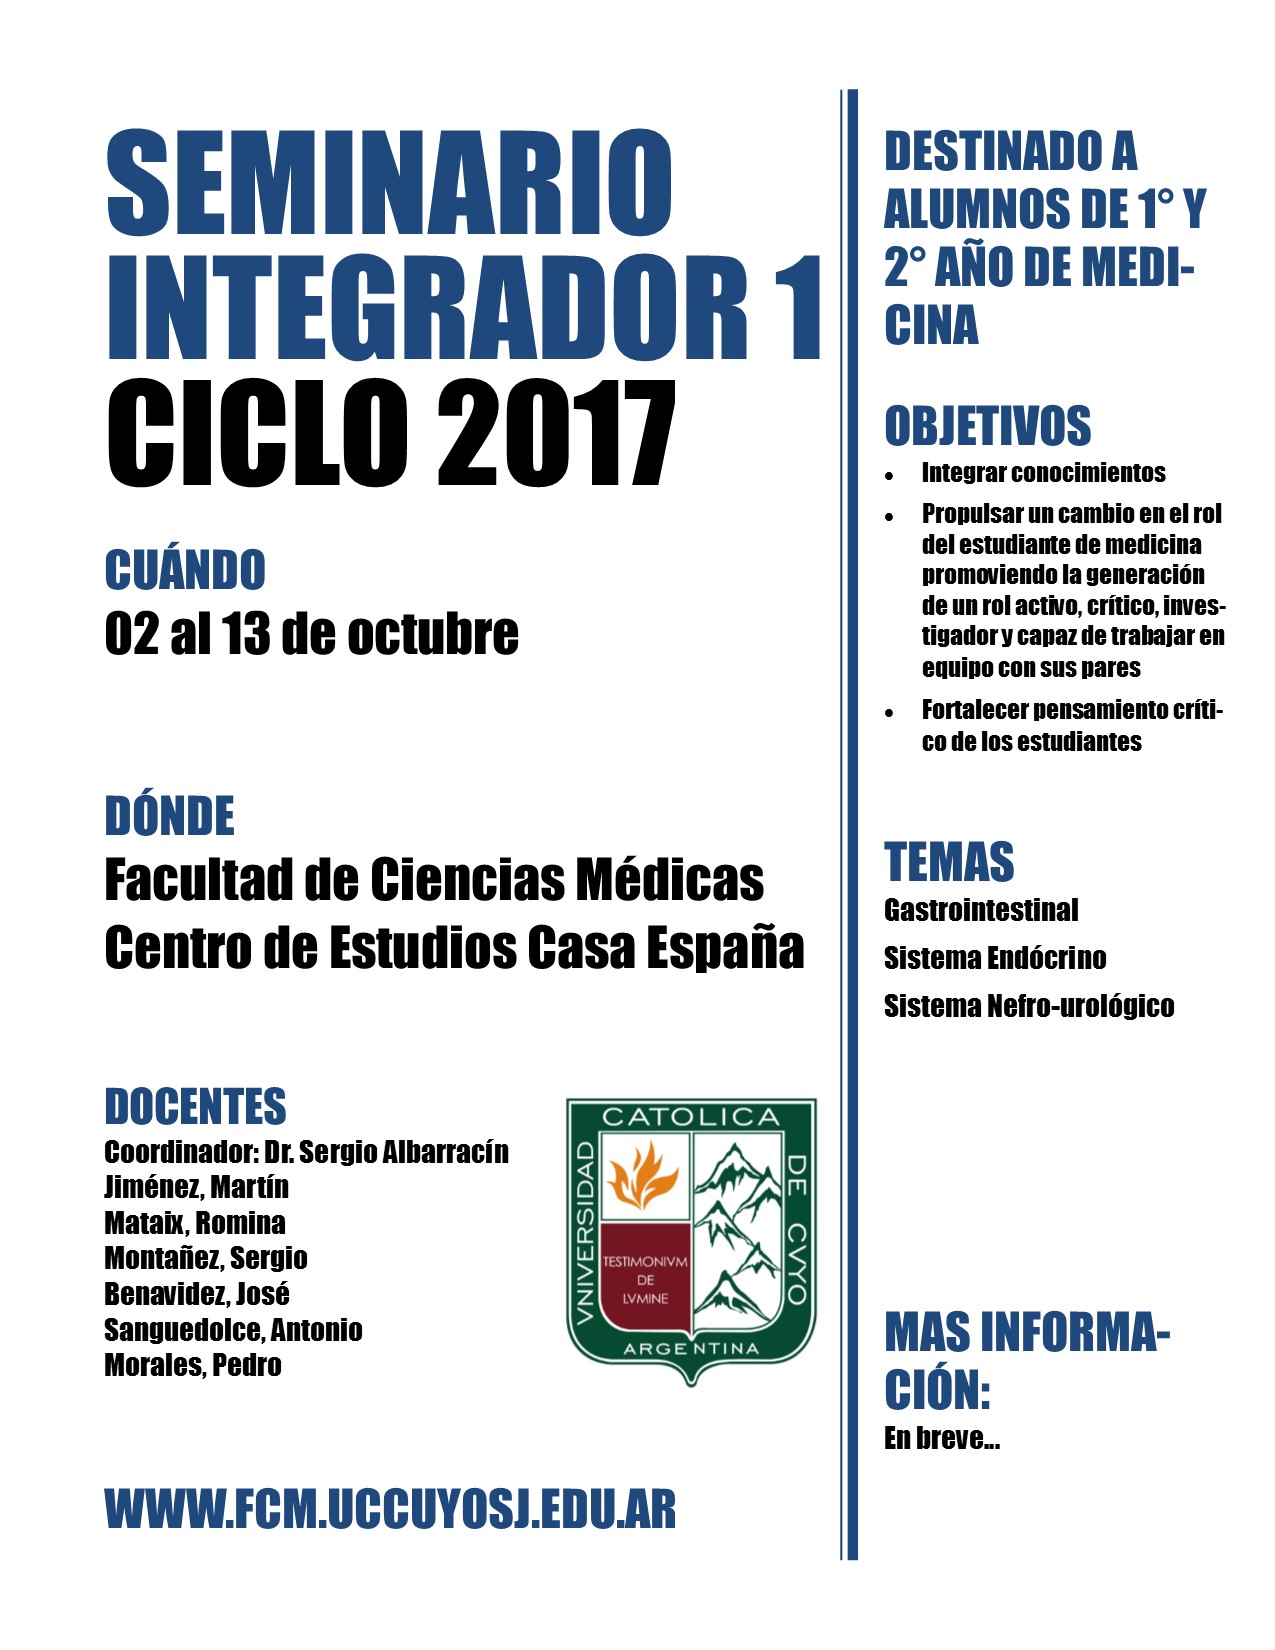 Medicina seminario integrador 2017